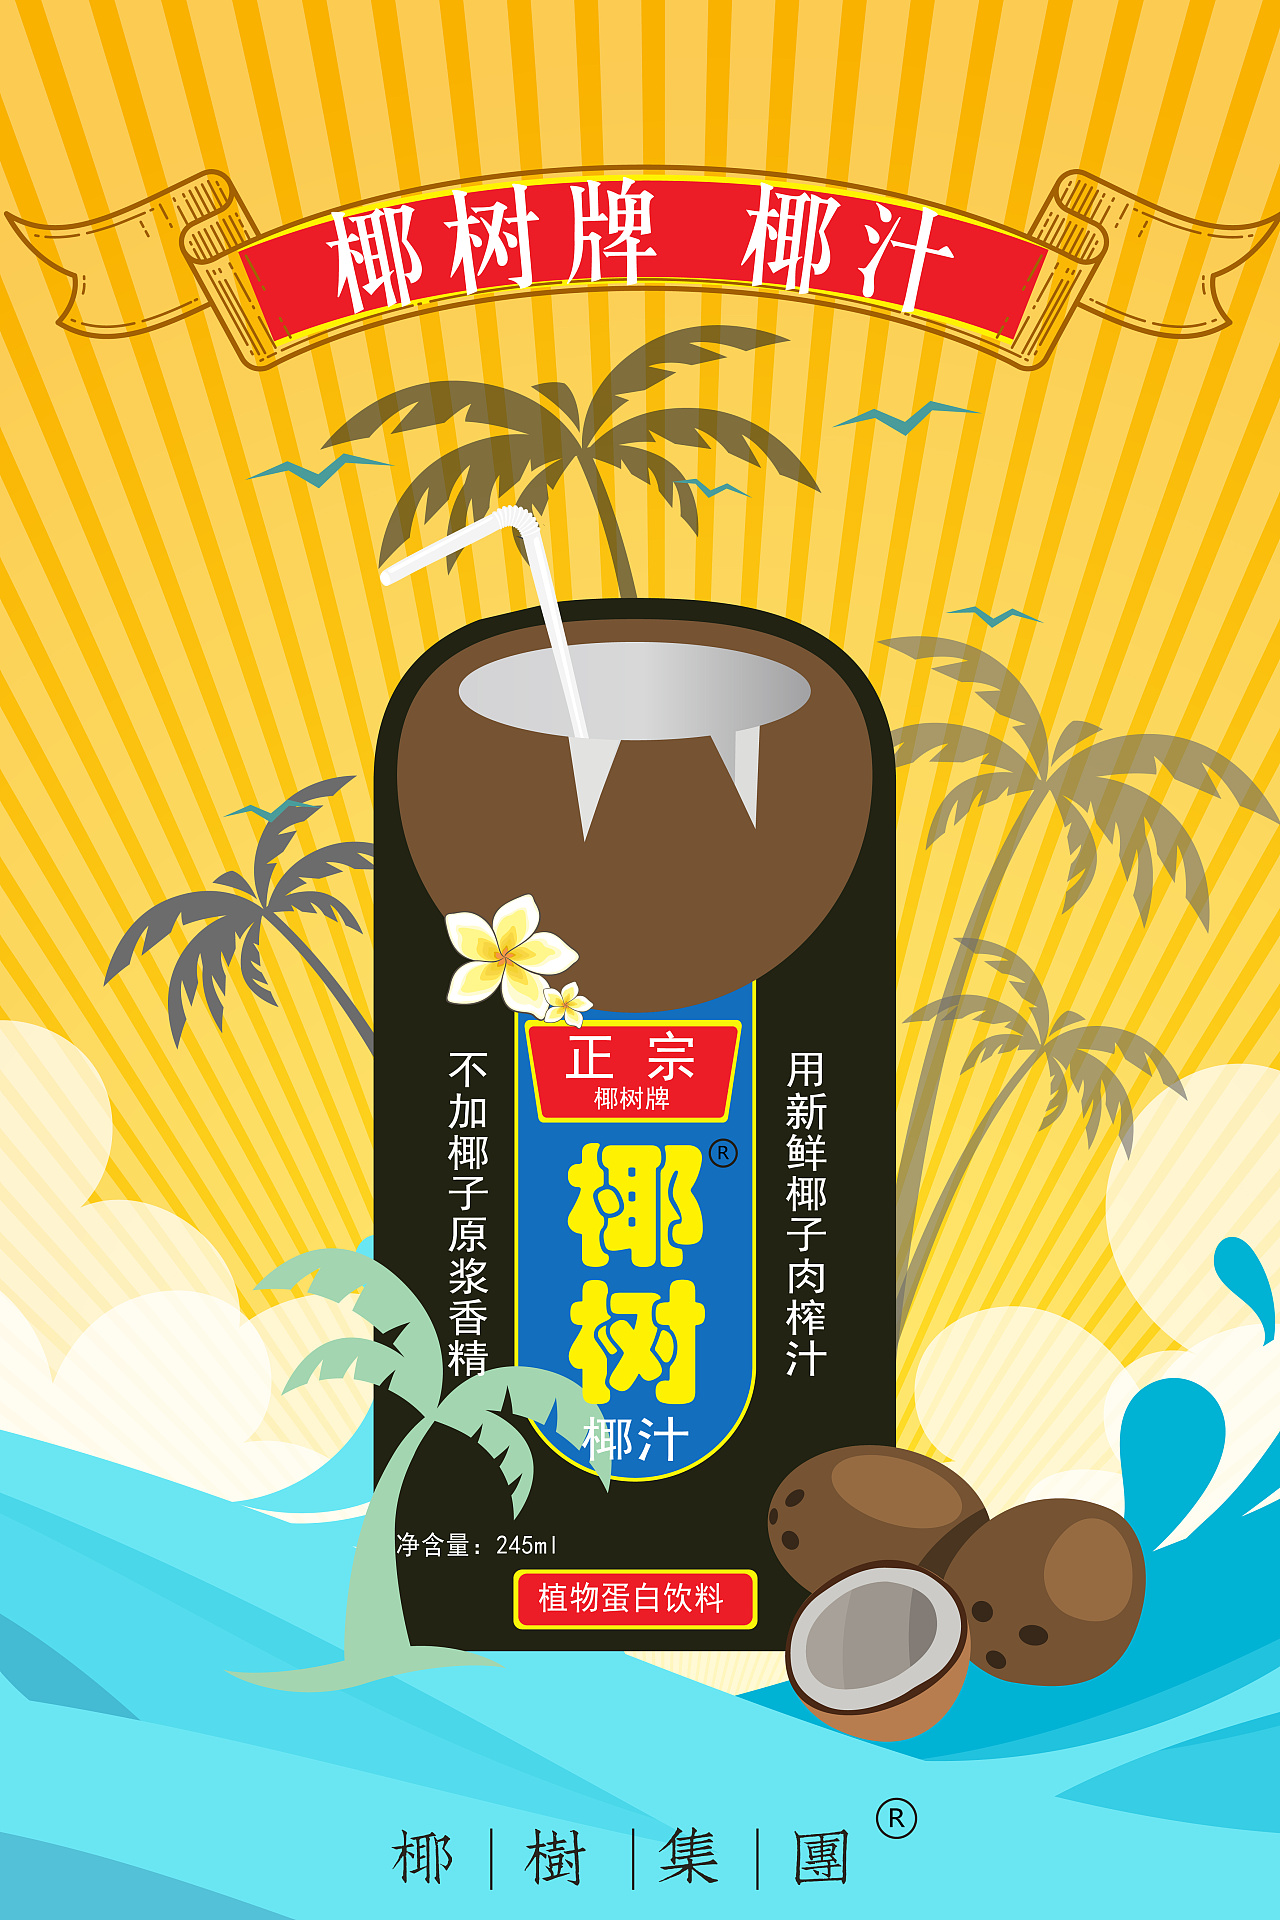 椰子汁广告语图片